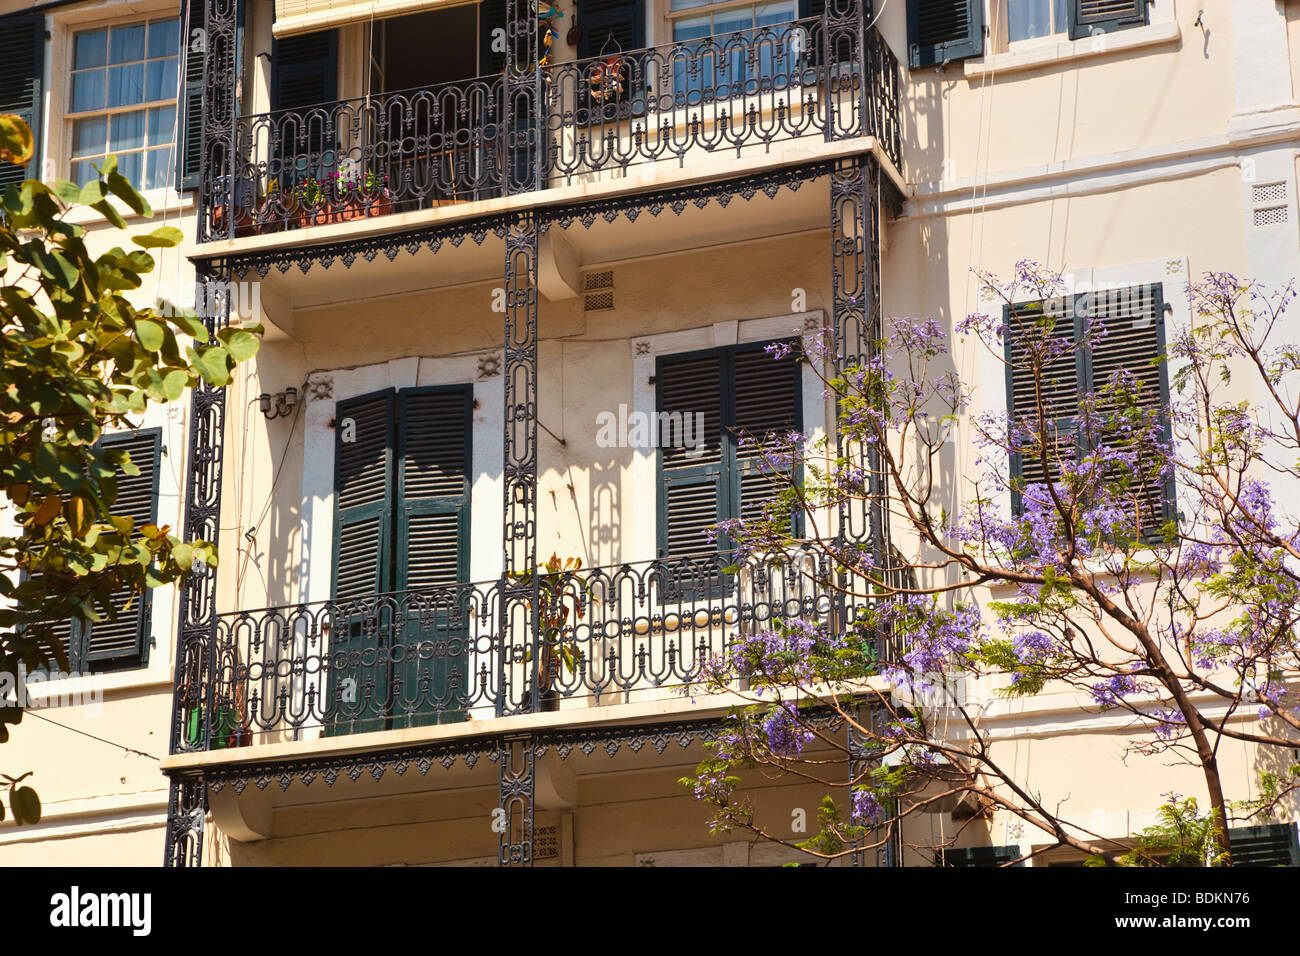 Gibilterra. Tipica architettura in Main Street. Balconi in ferro battuto, finestre a ghigliottina in stile mediterraneo e persiane. Foto Stock